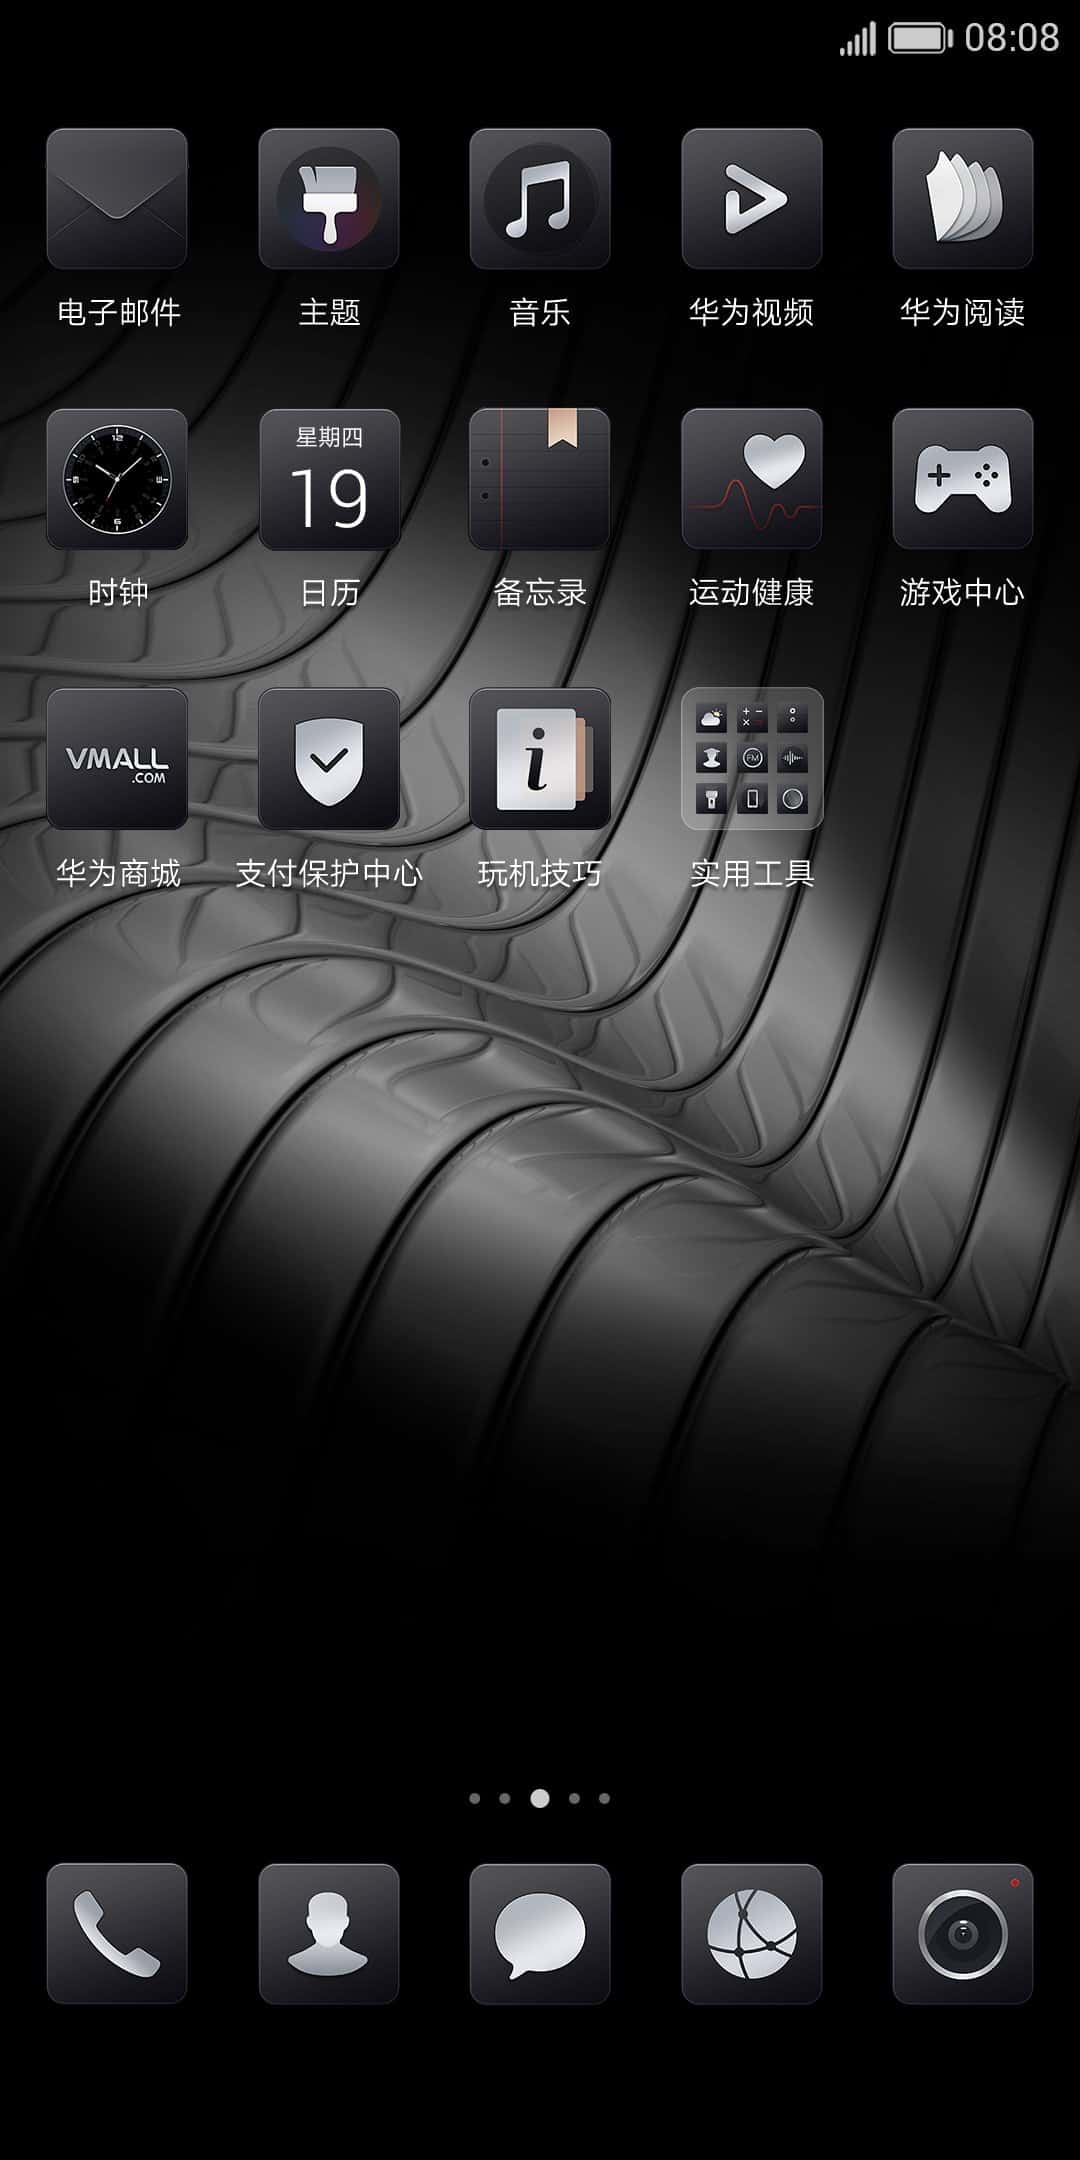 Huawei-Mate-10-themes